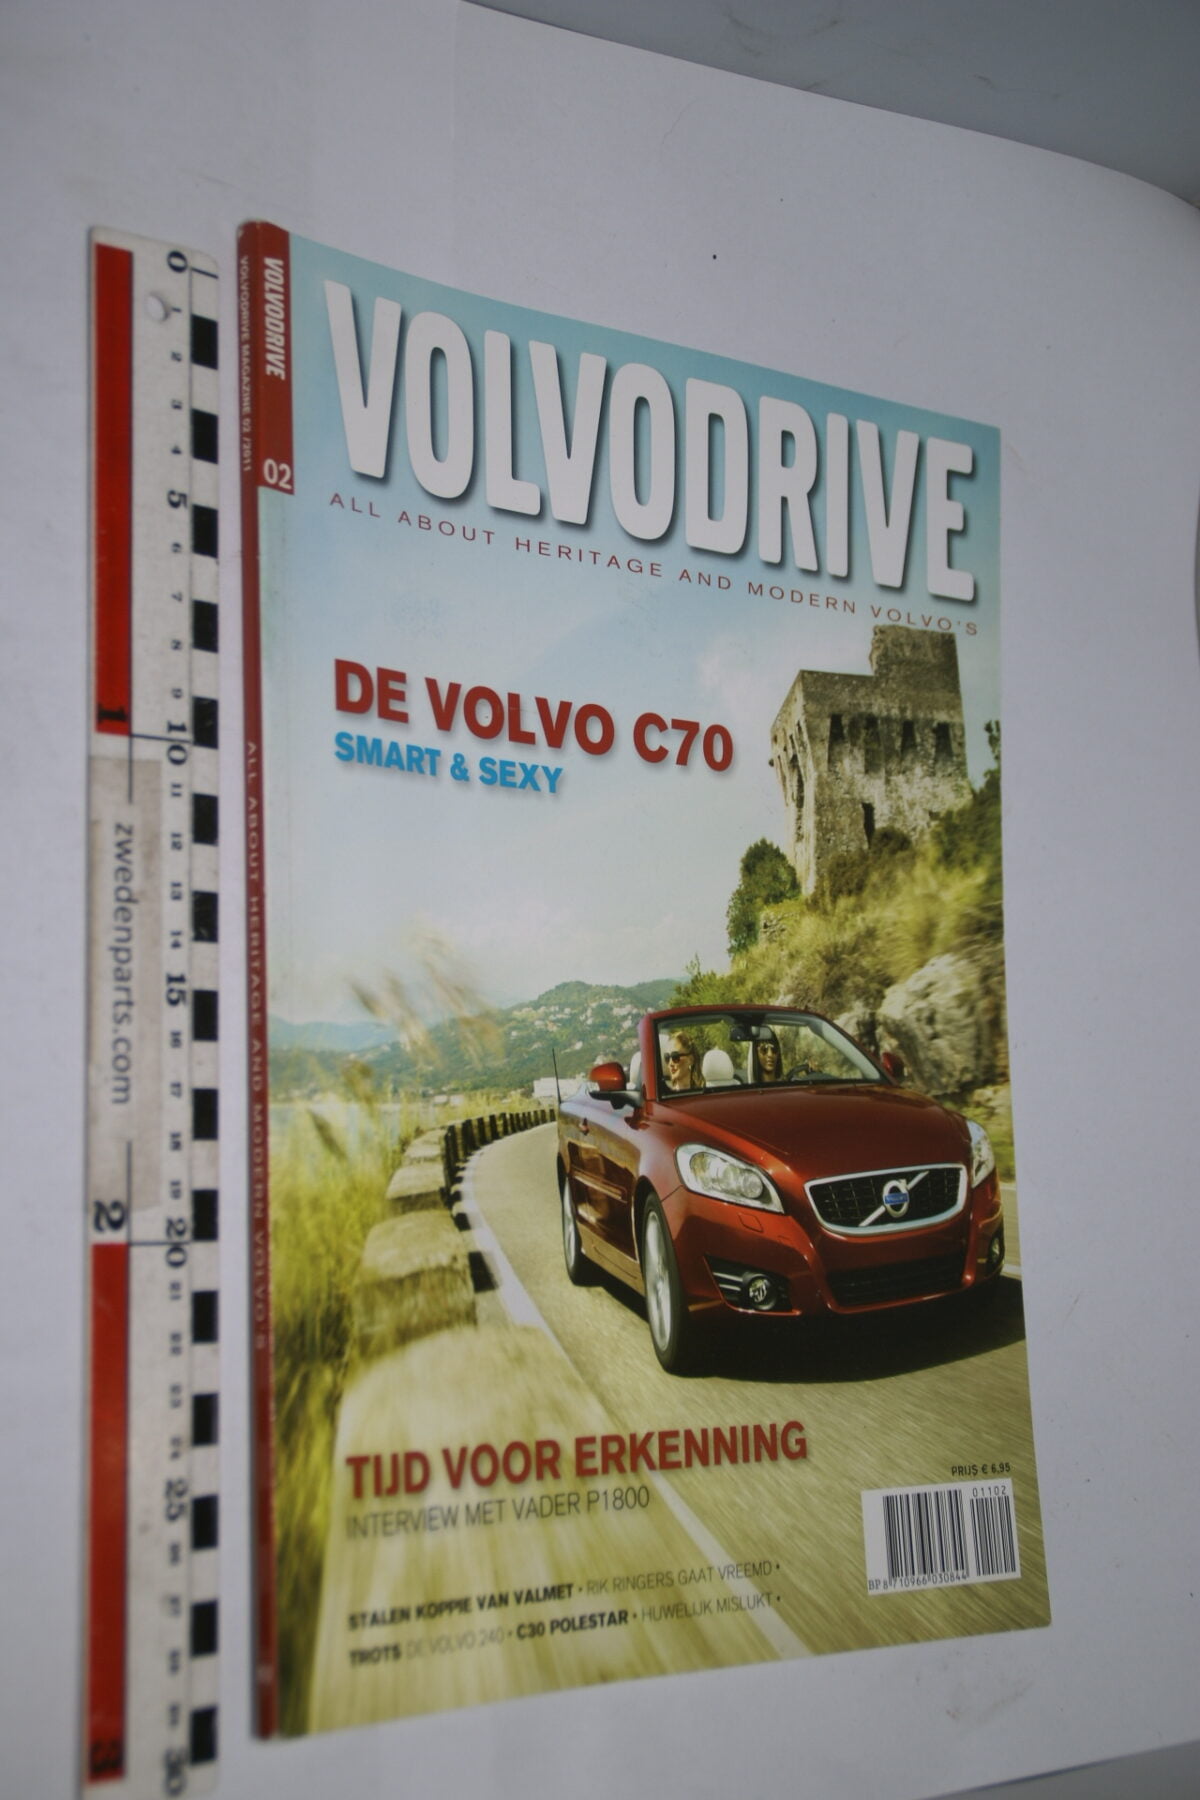 DSC09568 2011 tijdschrift Volvodrive nr 2 Volvo 1800 strip, C70-d8b0614a